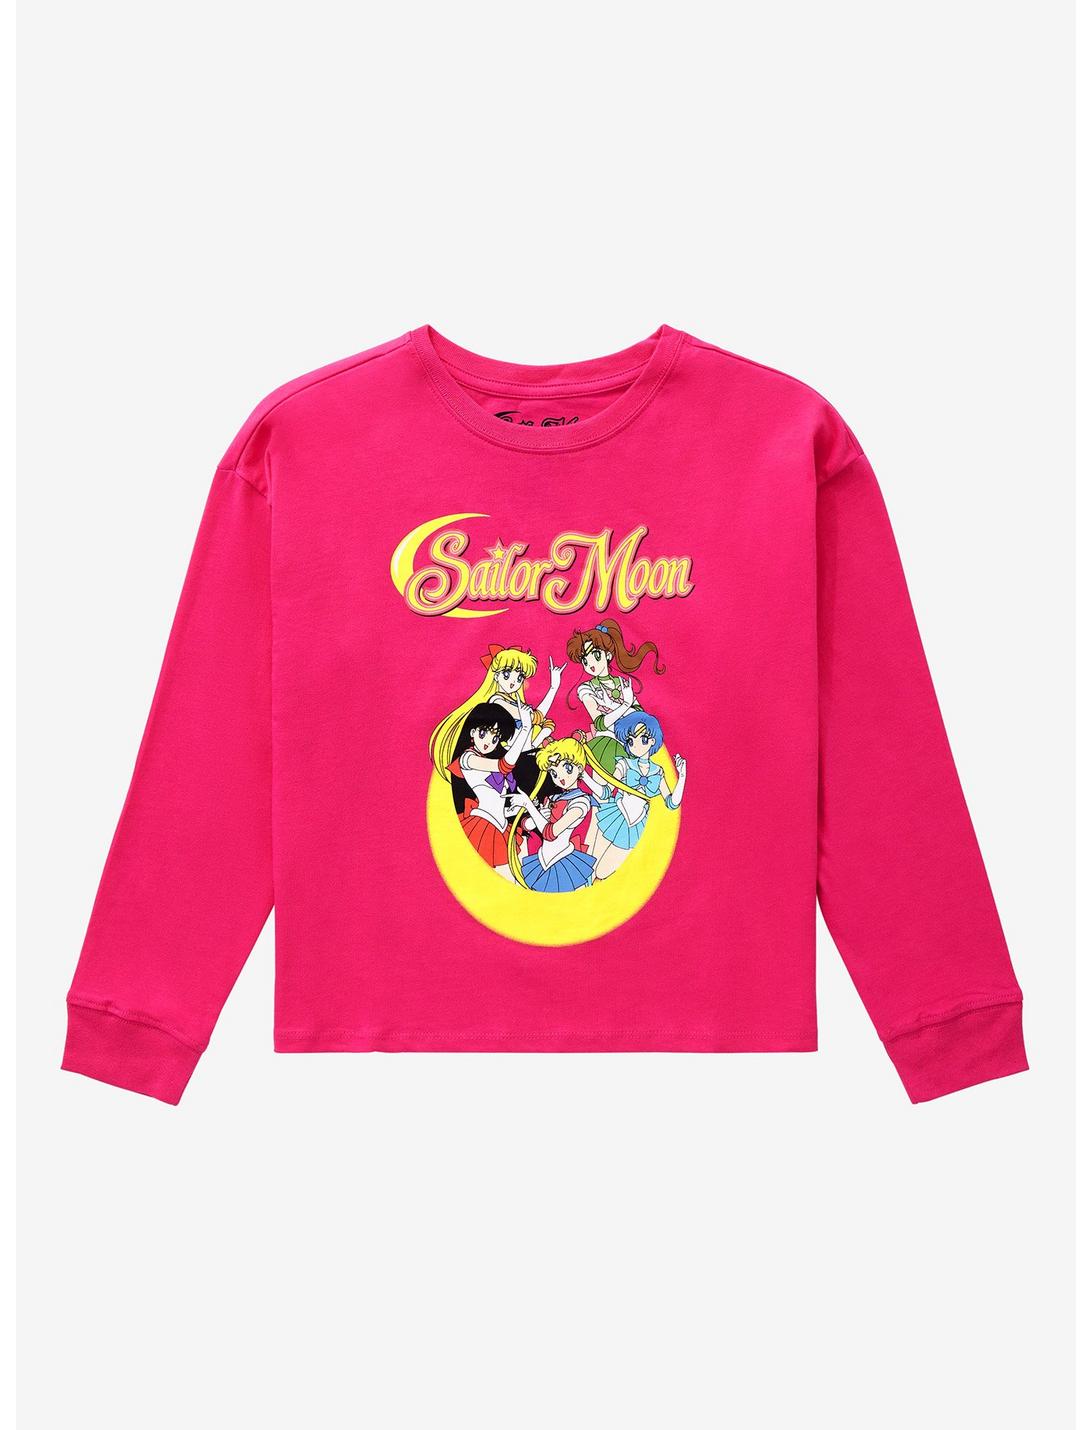 Sailor Moon Group Long Sleeve Youth T-Shirt, PINK, hi-res